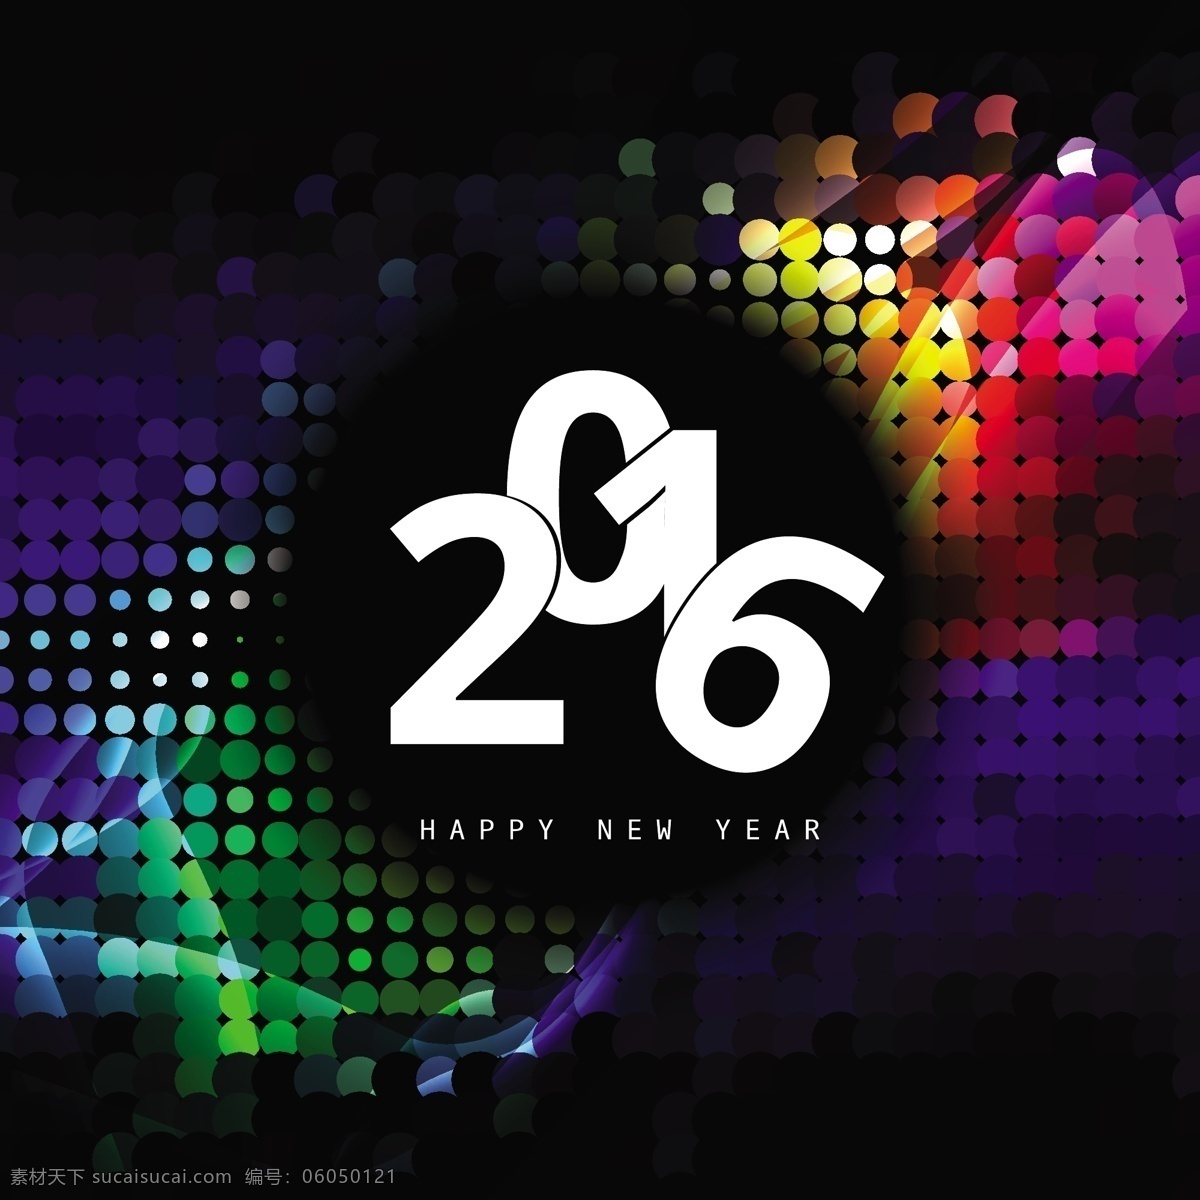 七彩 发光 新 年 2016 卡 背景 抽象 新的一年 新的一年里 幸福 快乐 模板 壁纸 庆典 新事件 节日 丰富多彩 色彩的背景下 今年 节日快乐 半色调 问候 黑色